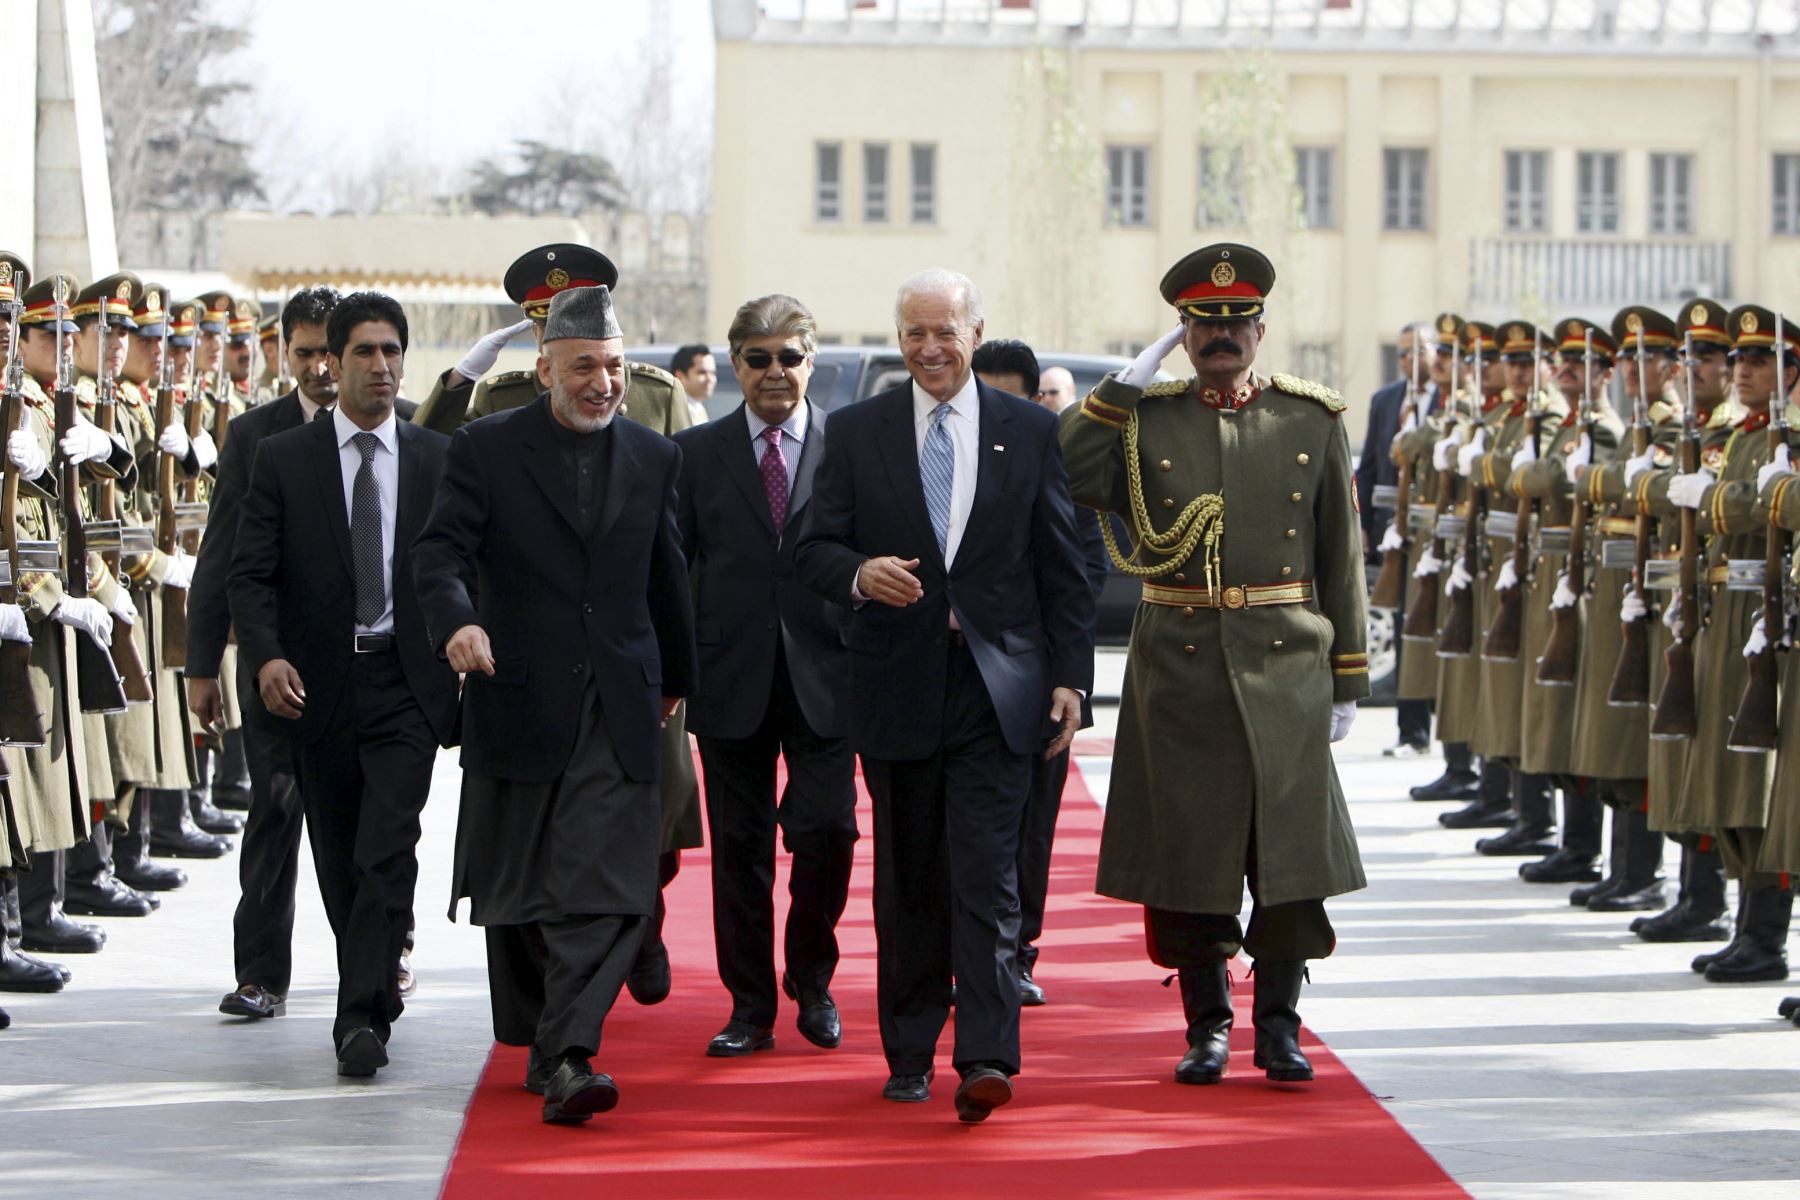 El vicepresidente estadounidense Joe Biden y el presidente afgano Hamid Karzai caminan junto a una guardia de honor en el Palacio Presidencial en Kabul, el 11 de enero de 2011.  Foto: AFP